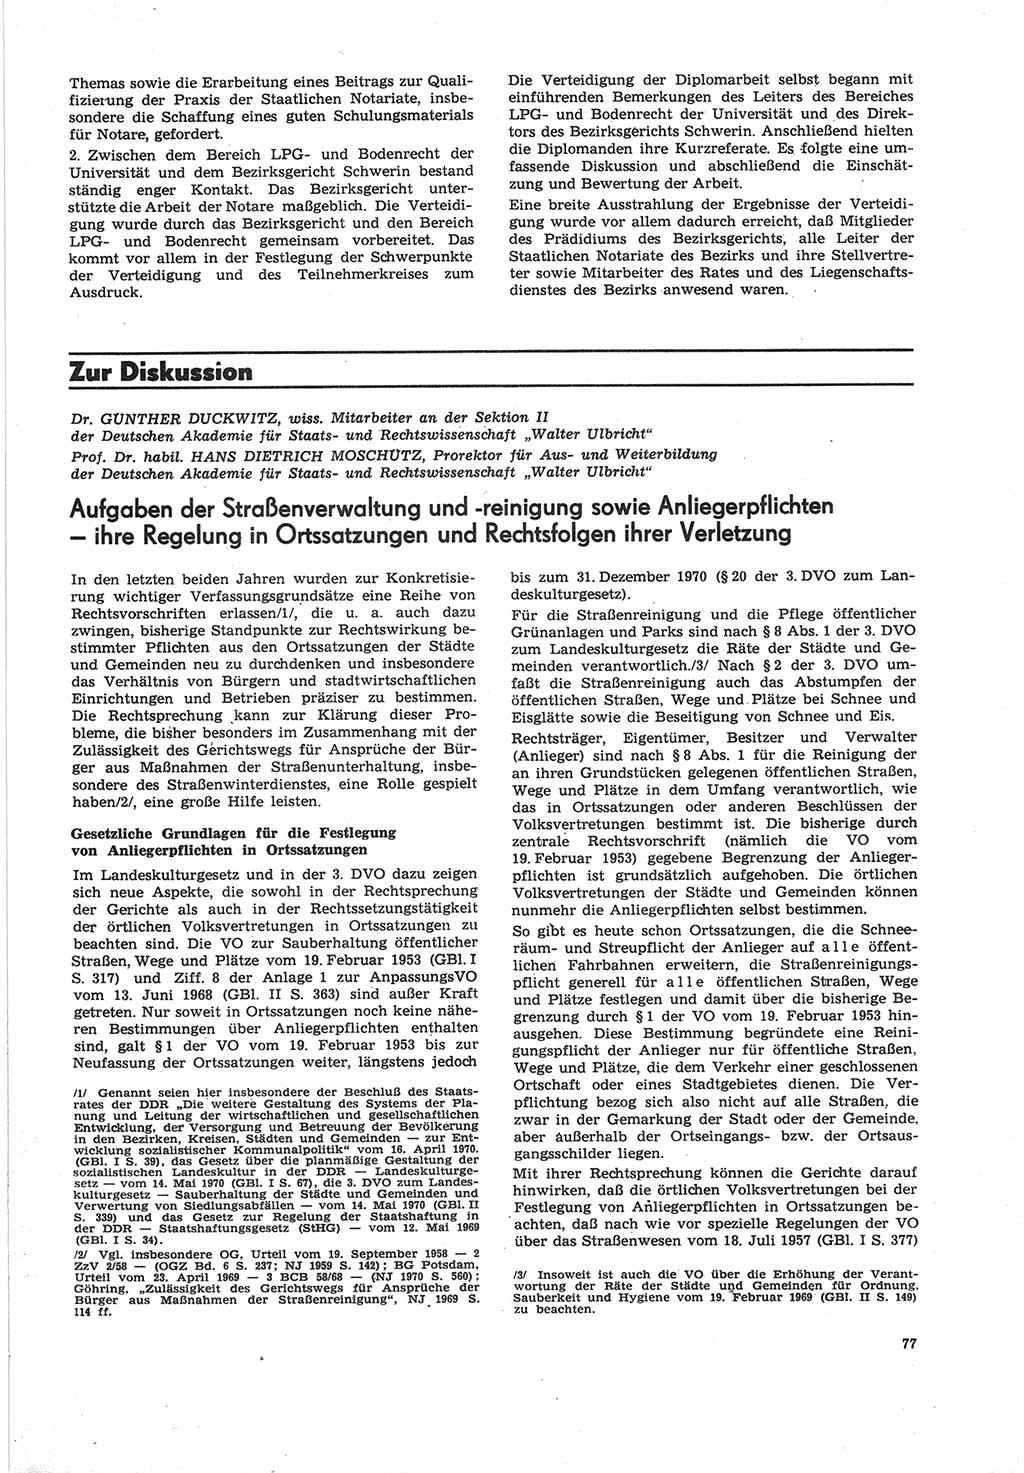 Neue Justiz (NJ), Zeitschrift für Recht und Rechtswissenschaft [Deutsche Demokratische Republik (DDR)], 25. Jahrgang 1971, Seite 77 (NJ DDR 1971, S. 77)